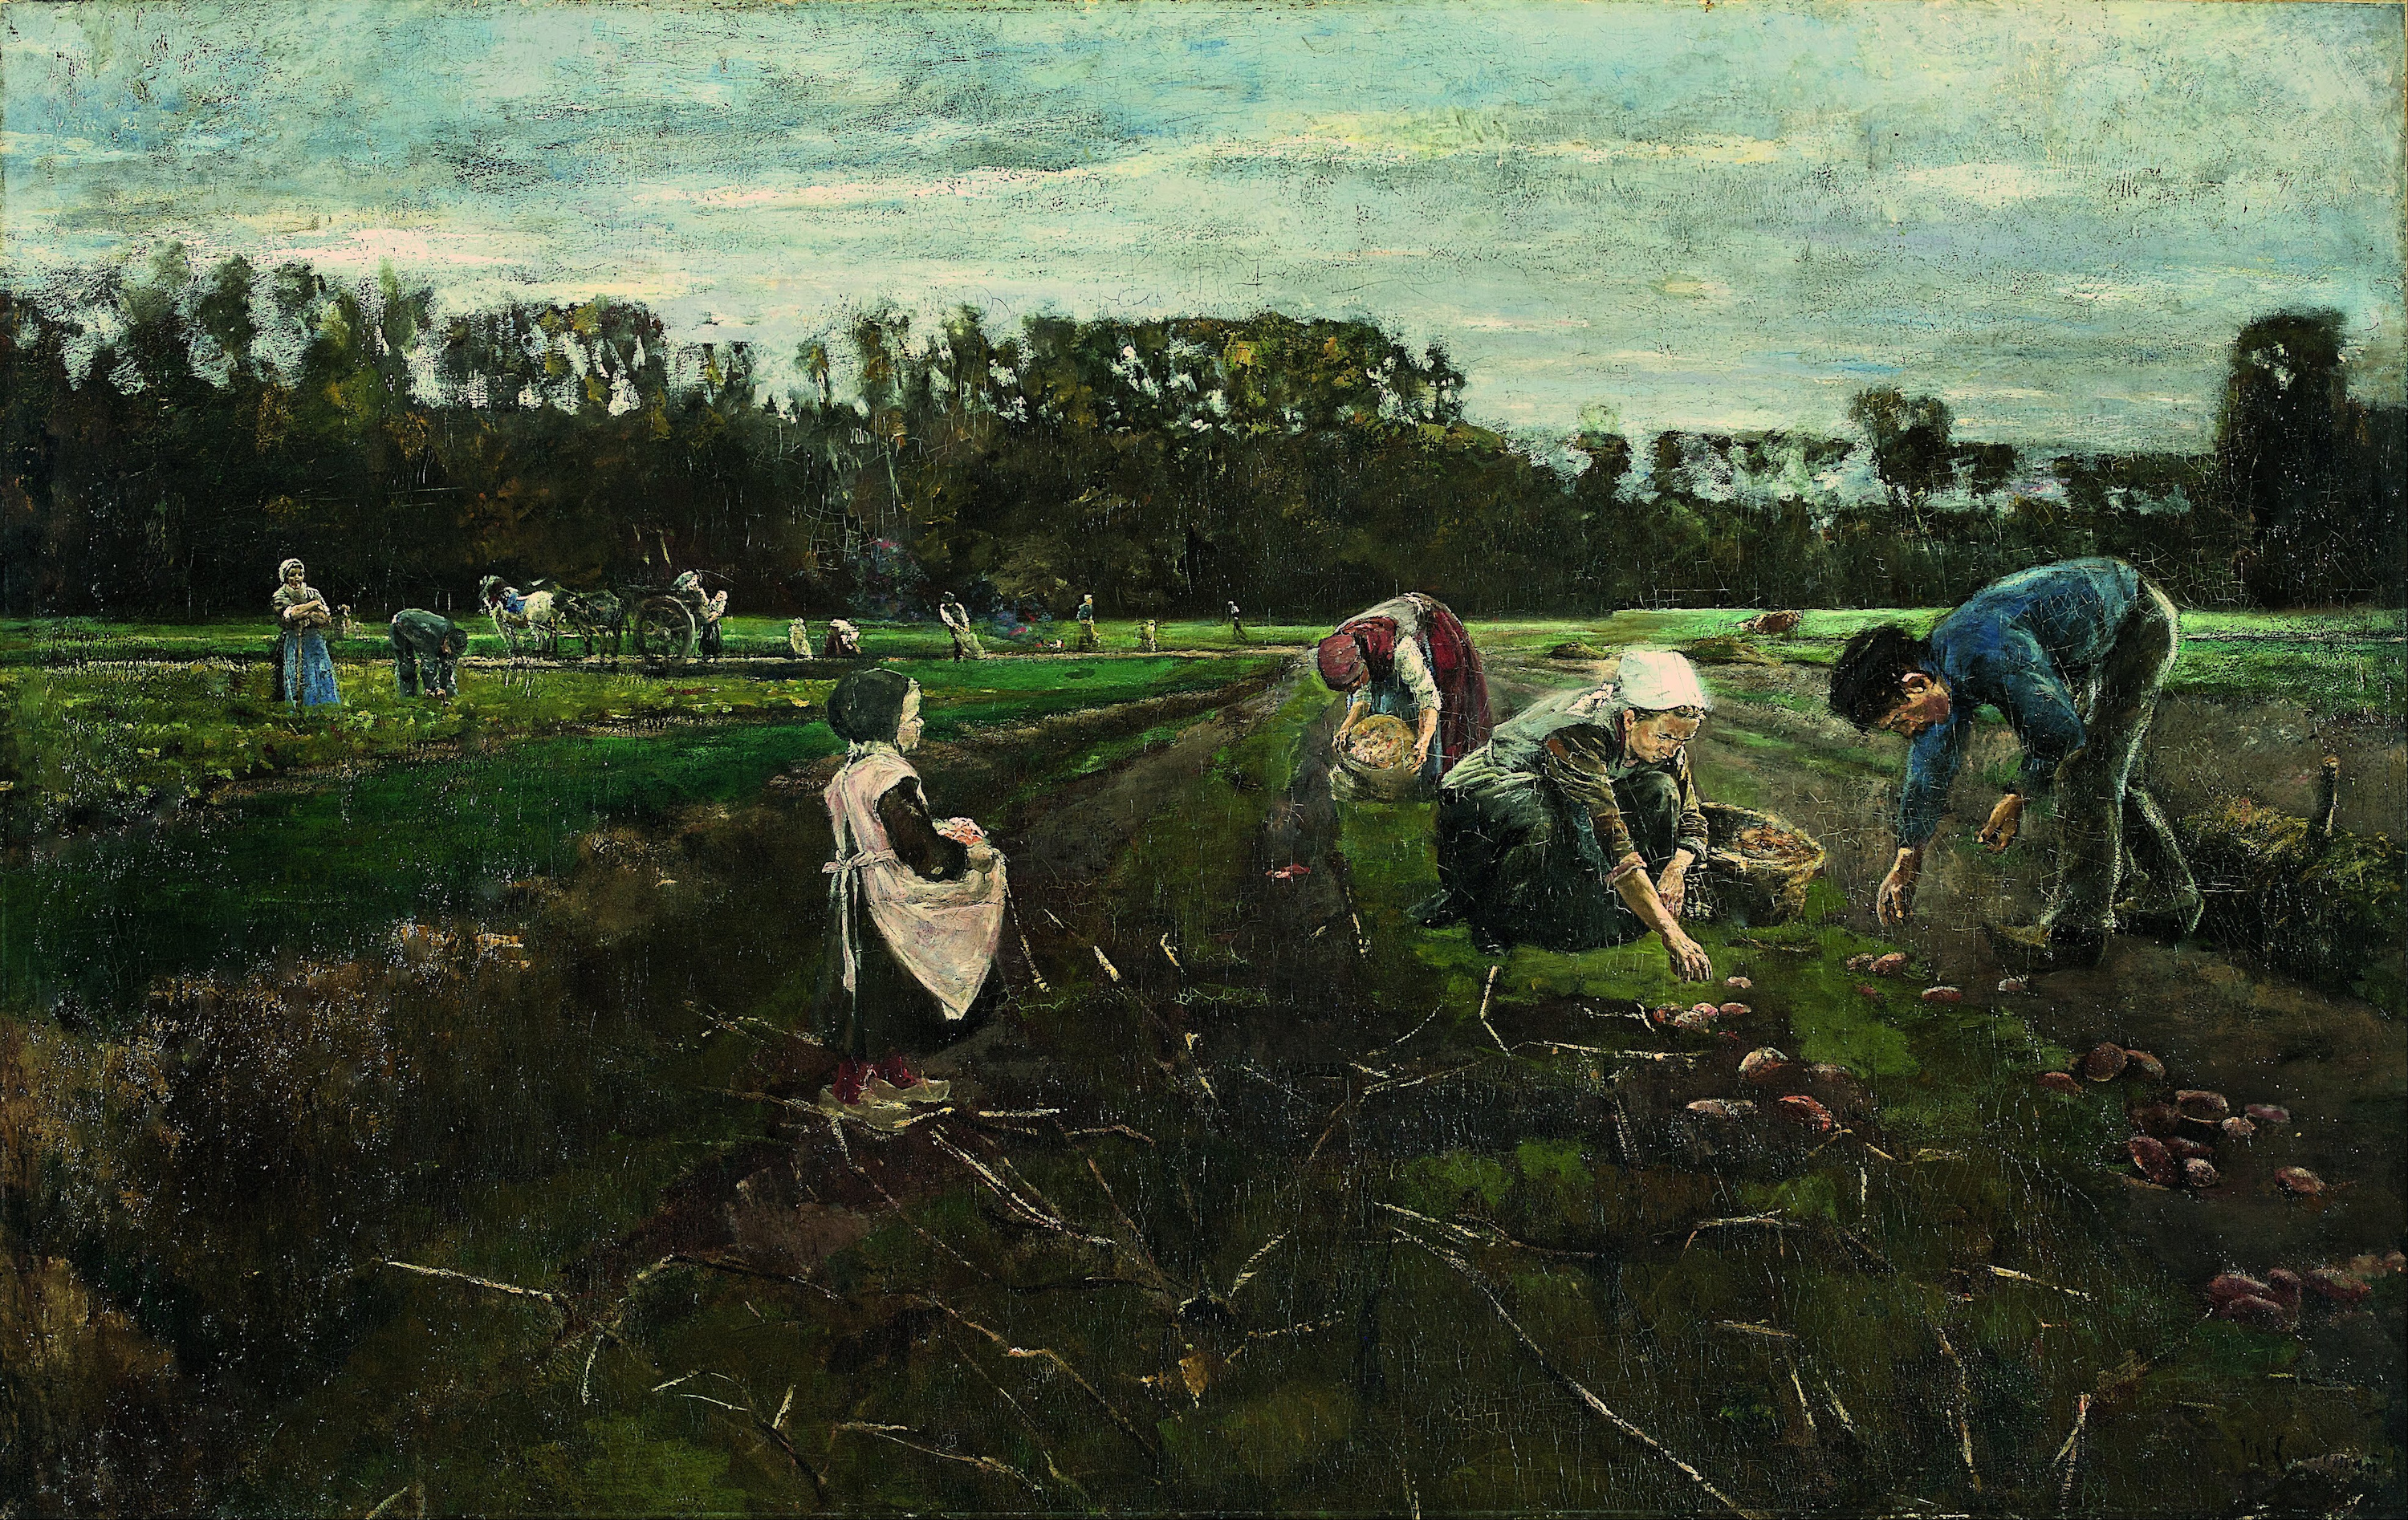 La récolte de pommes de terre à Barbizon by Max Liebermann - 1875 - 172 x 108,5 cm 